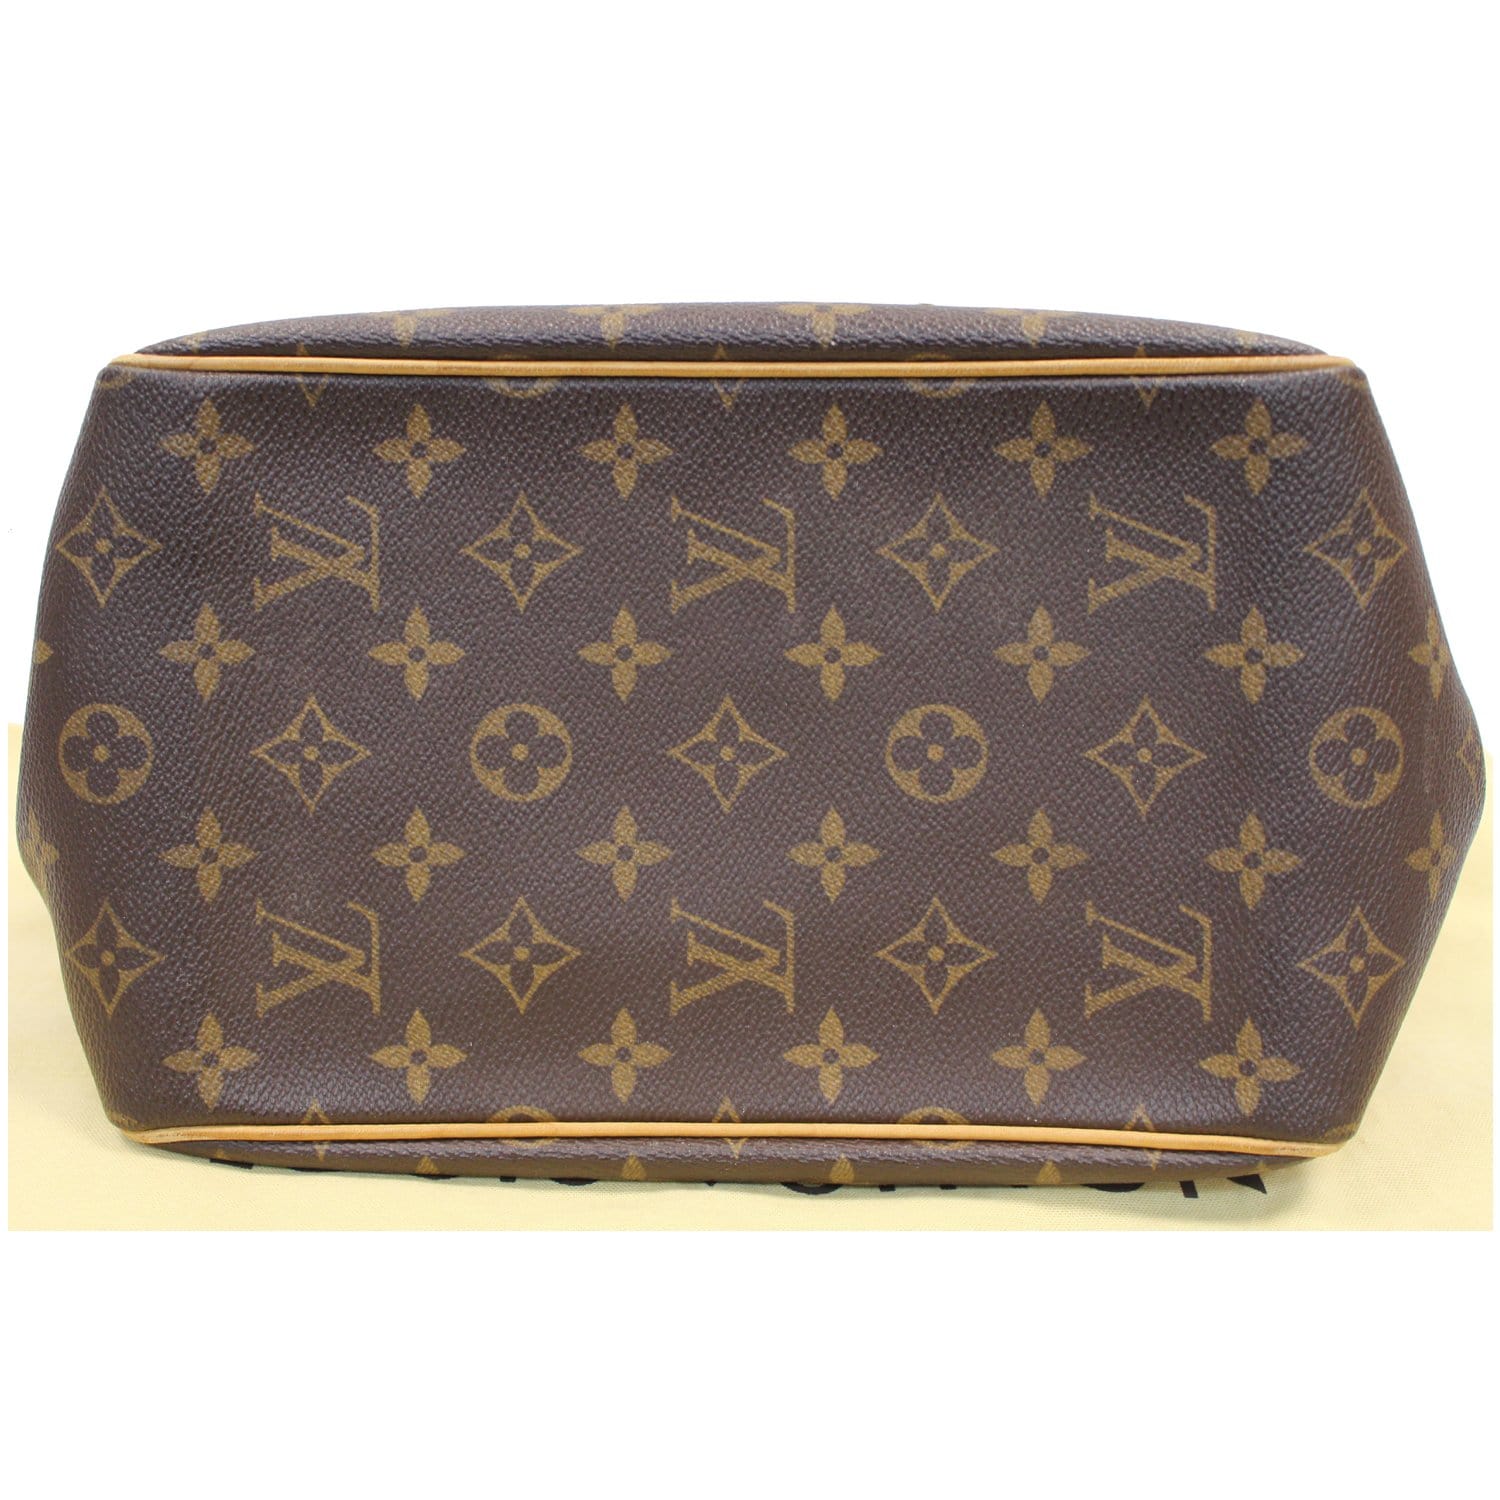 Louis Vuitton Bags | Authentic Louis Vuitton Monogram Batignolles Vertical Tote Bag., Larger Version. | Color: Brown/Gold | Size: Upon Request 